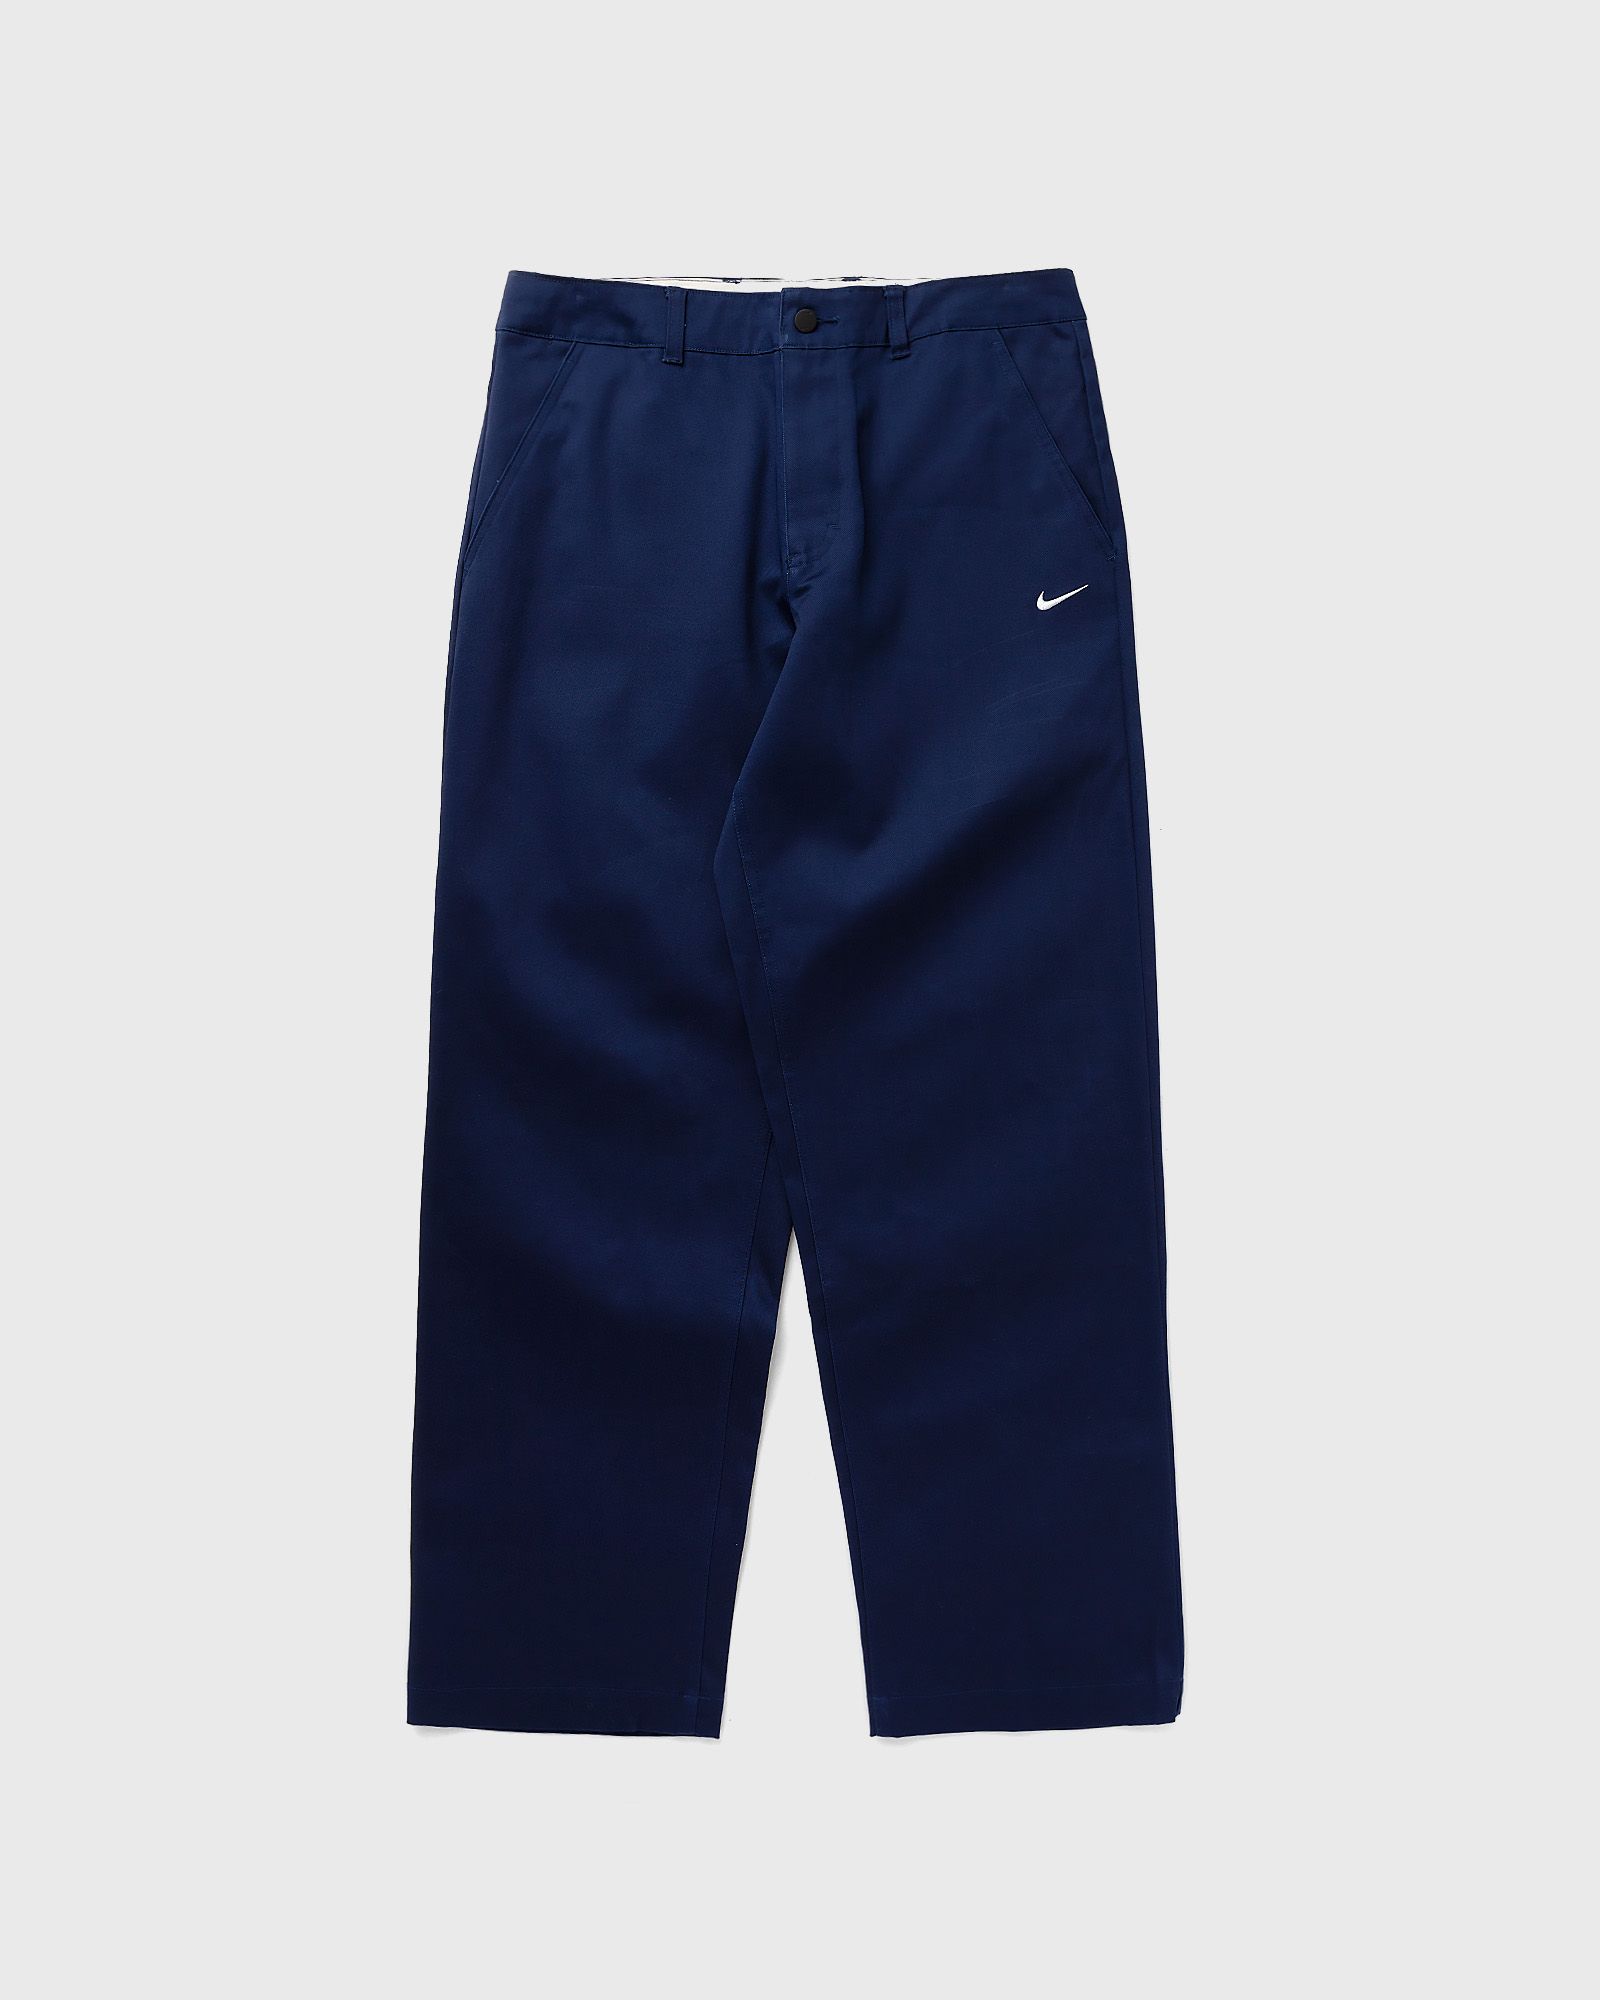 Nike - el chino pants men casual pants blue in größe:l